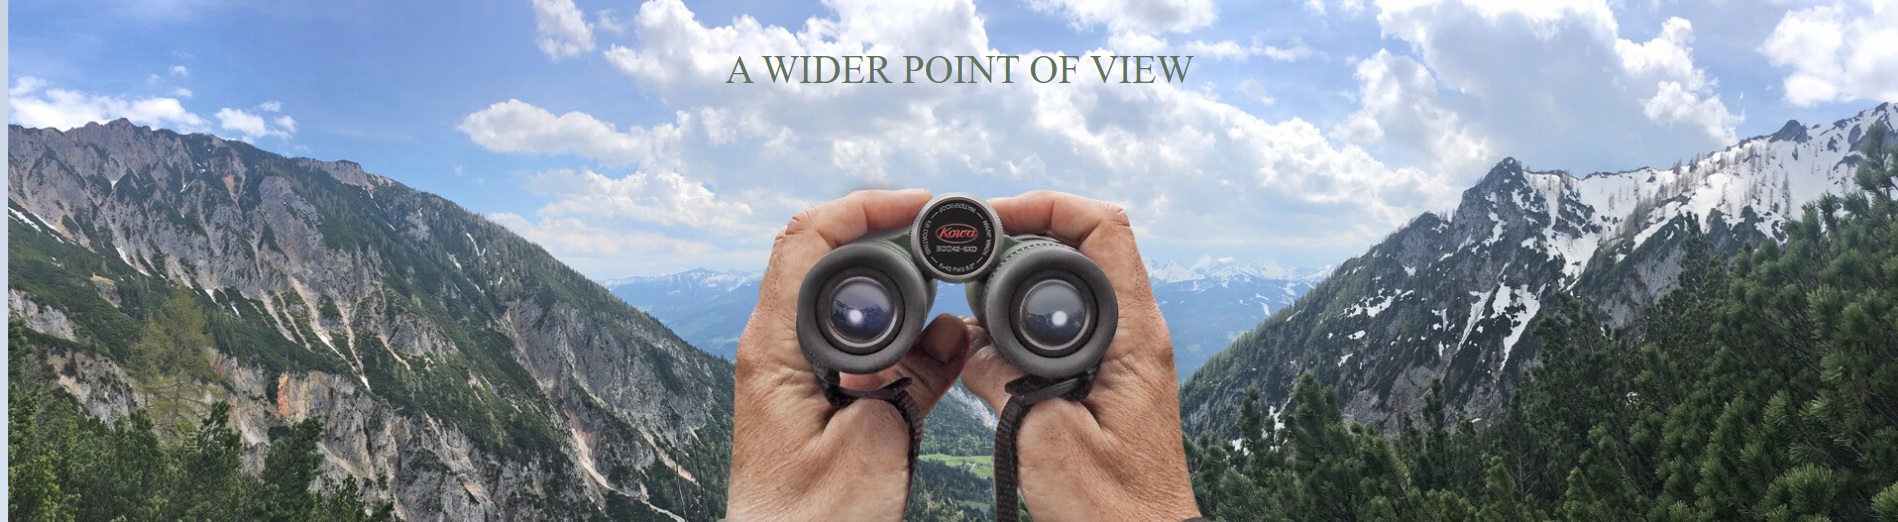 kowa bdii xd binoculars have a wide angle view